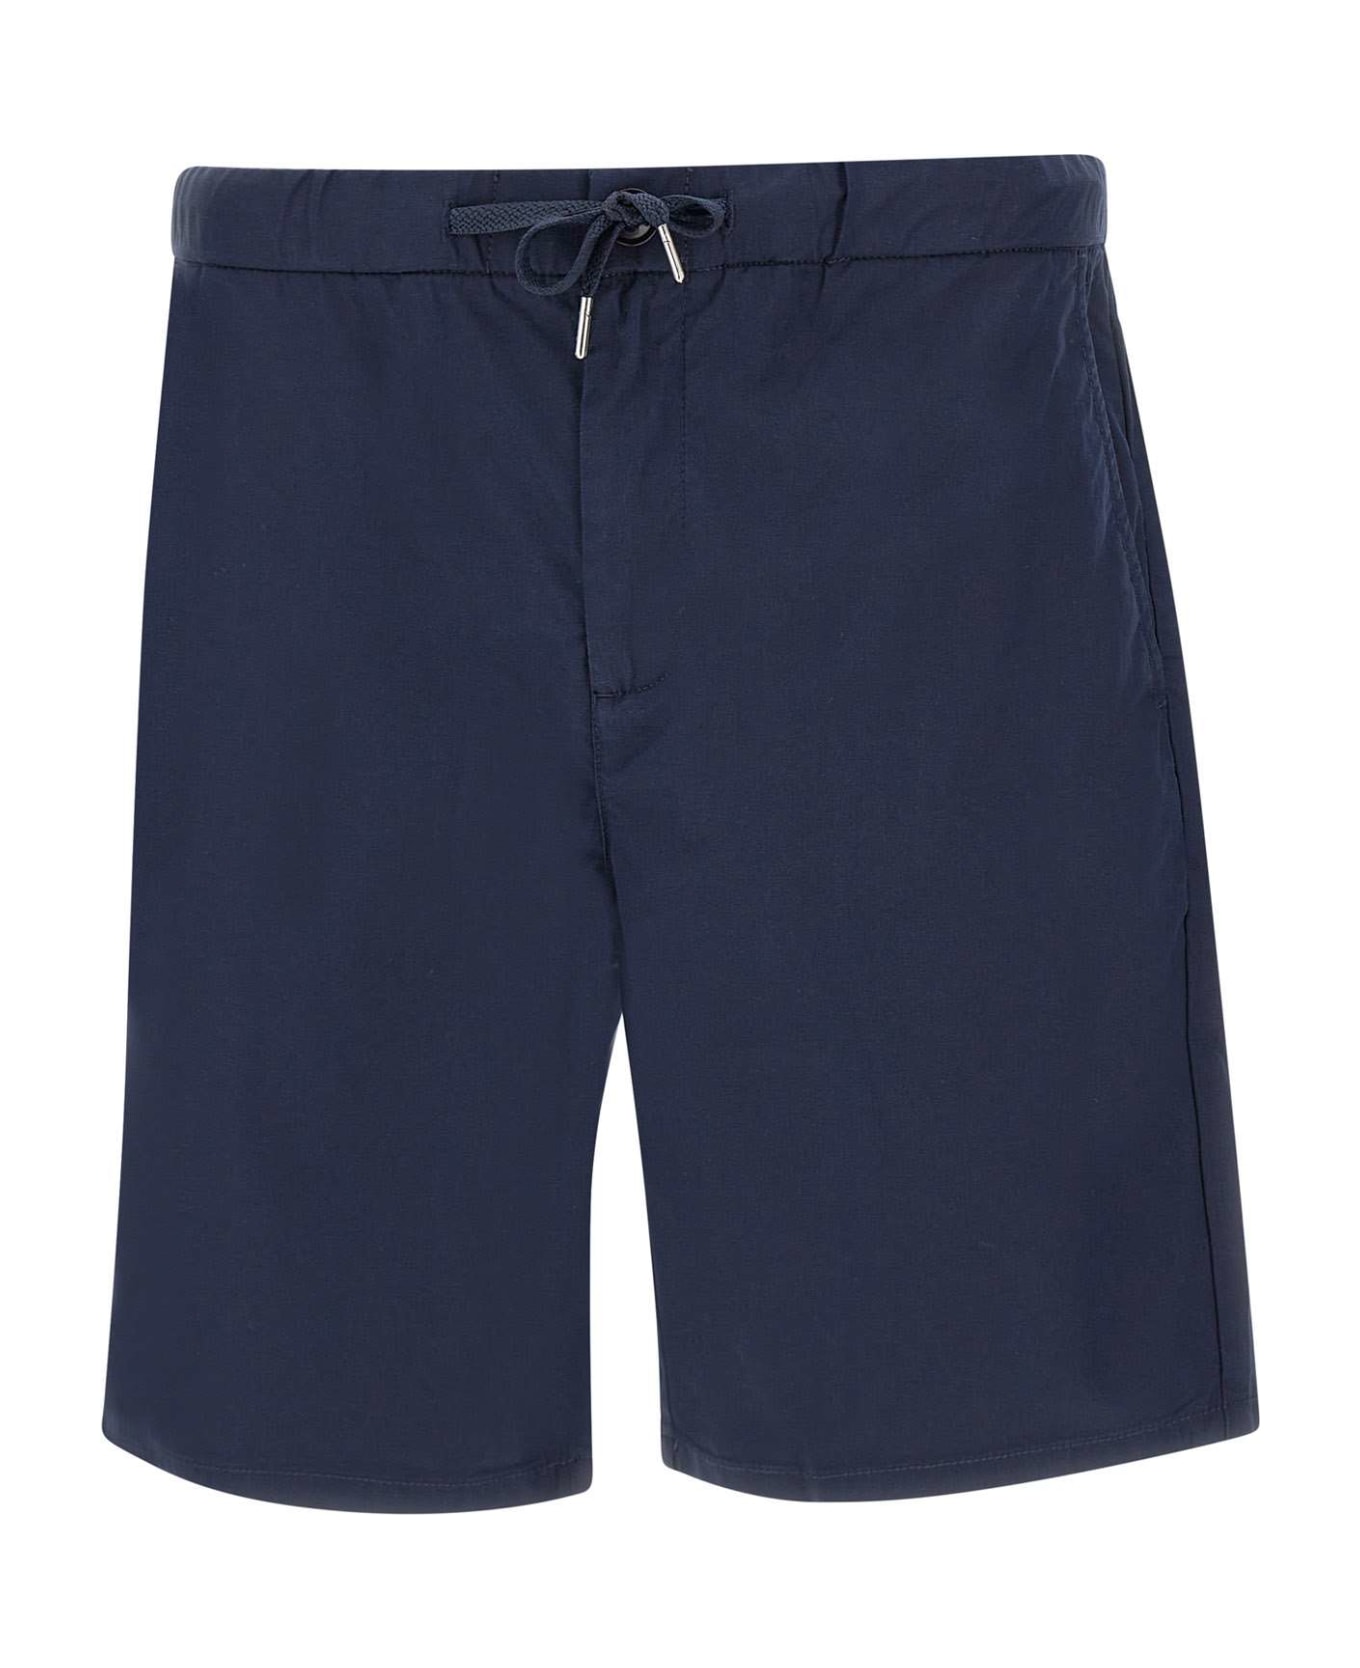 Sun 68 Shorts In Cotton - Blue